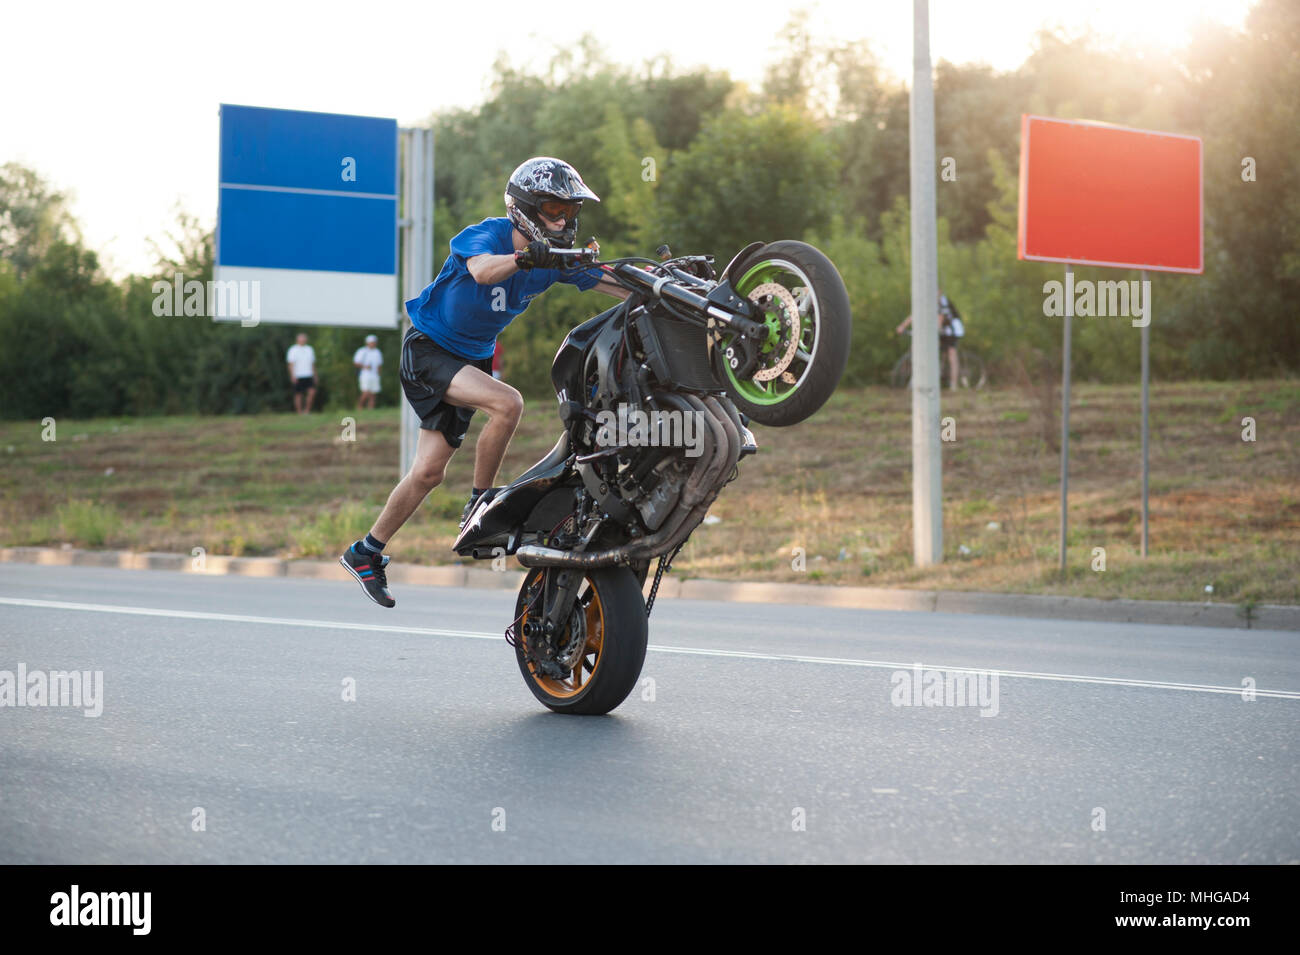 Ternopil, Ukraine - 9. August 2015: Seitenansicht von bewegten Biker äußerst gefährlichen Stunt auf seine schnelle Sport Motorrad. Keine Angst empfinden, zuversichtlich, in Erfahrung. Stockfoto